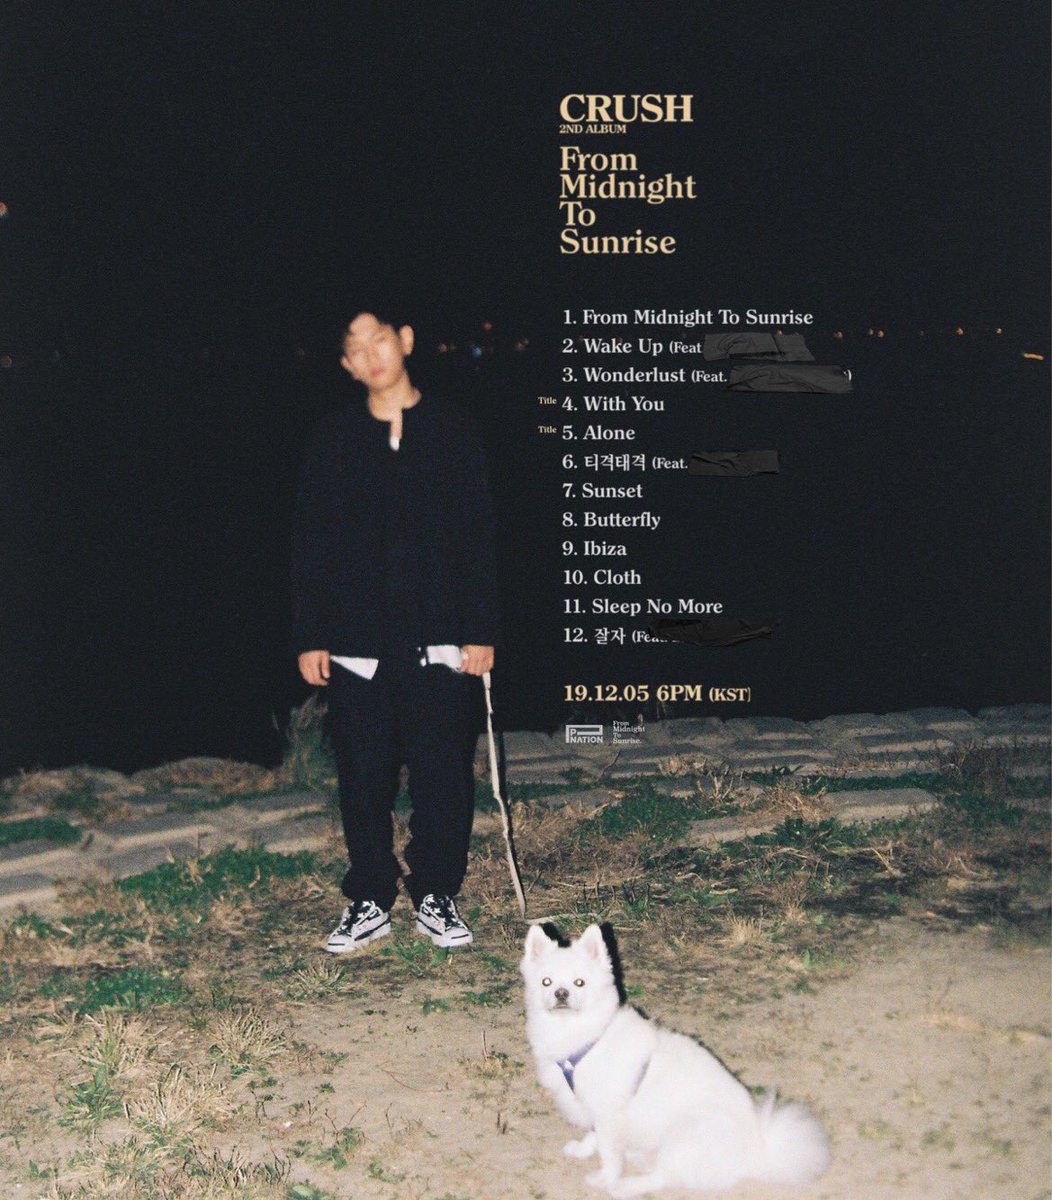 [Crush] 'From Midnight To Sunrise' 2nd Album Drops 2019.12.05 6PM KST . . . #Crush #크러쉬 #FromMidnightToSunrise #정규2집 #2ndAlbum #20191205 #20191205_6pm